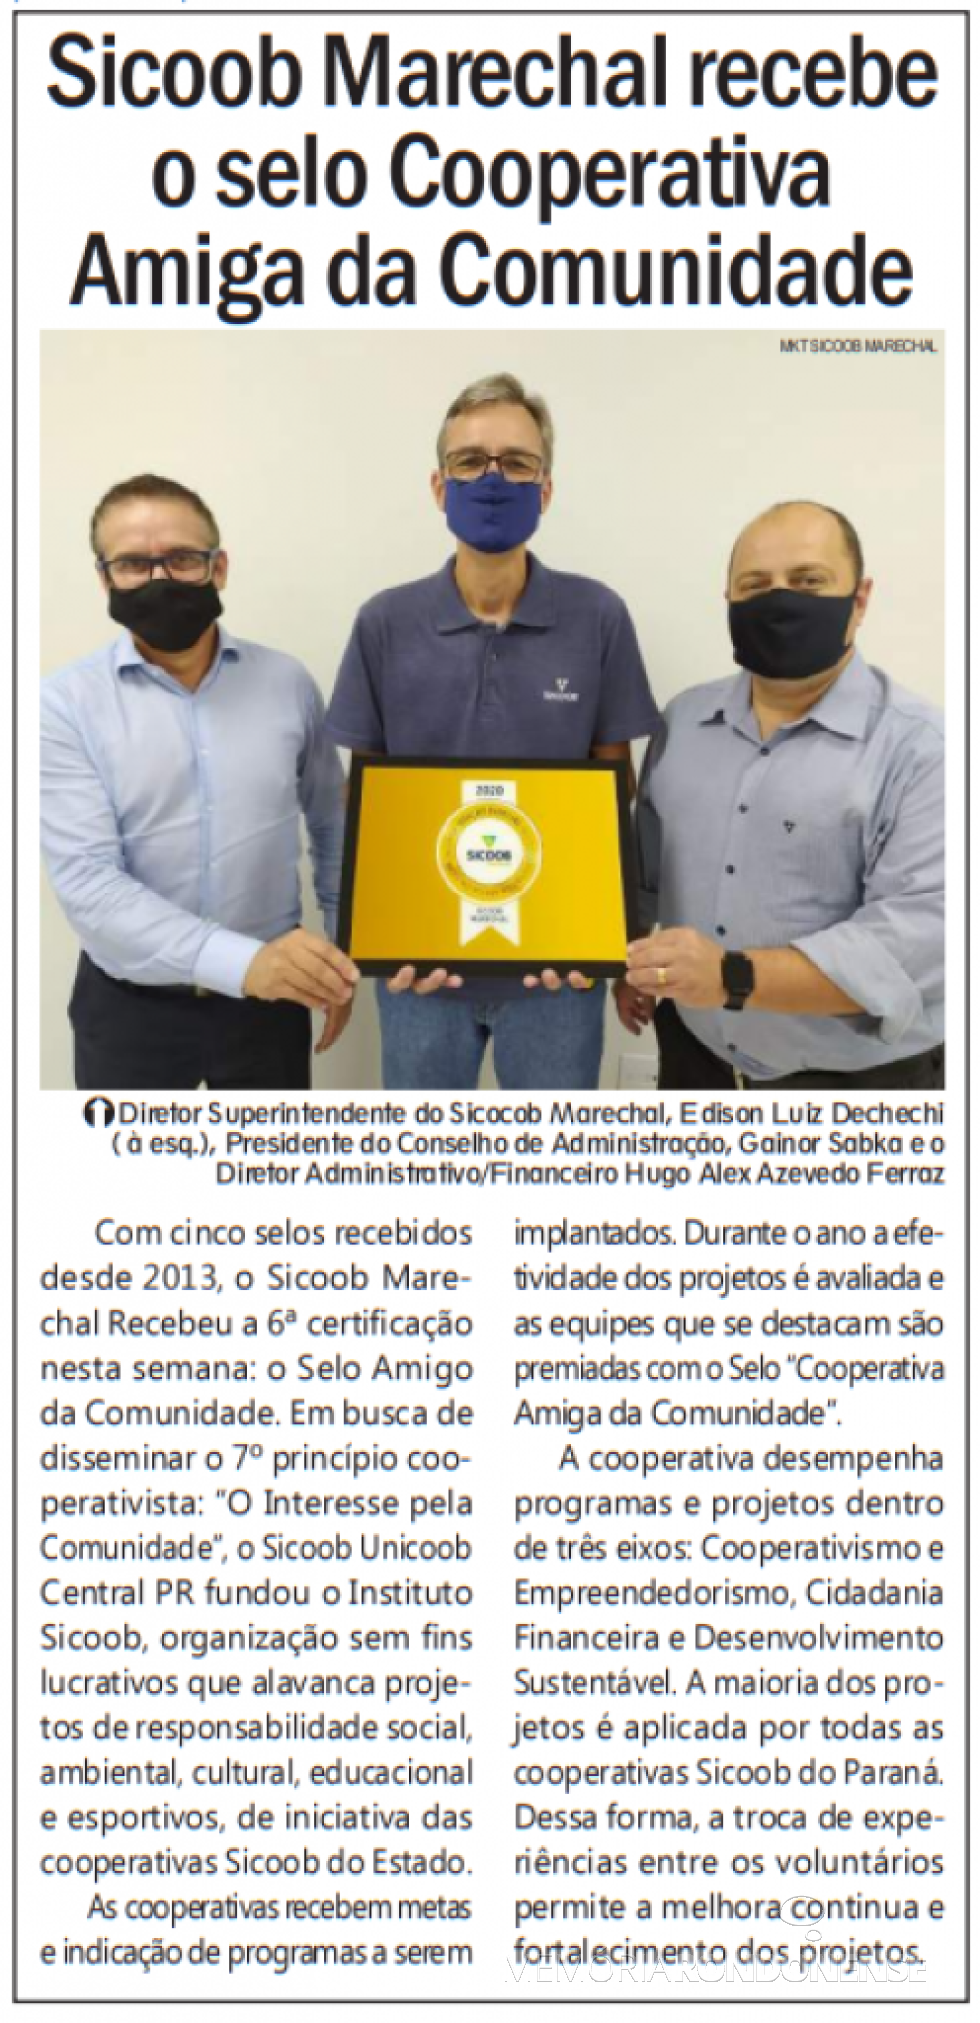 Destaque do jornal rondonense Tribuna do Oeste sobre o selo Cooperativa Amiga da Comunidade concedido ao SIcoob Marechal.
Imagem: Acervo do periódico - FOTO 32 - 